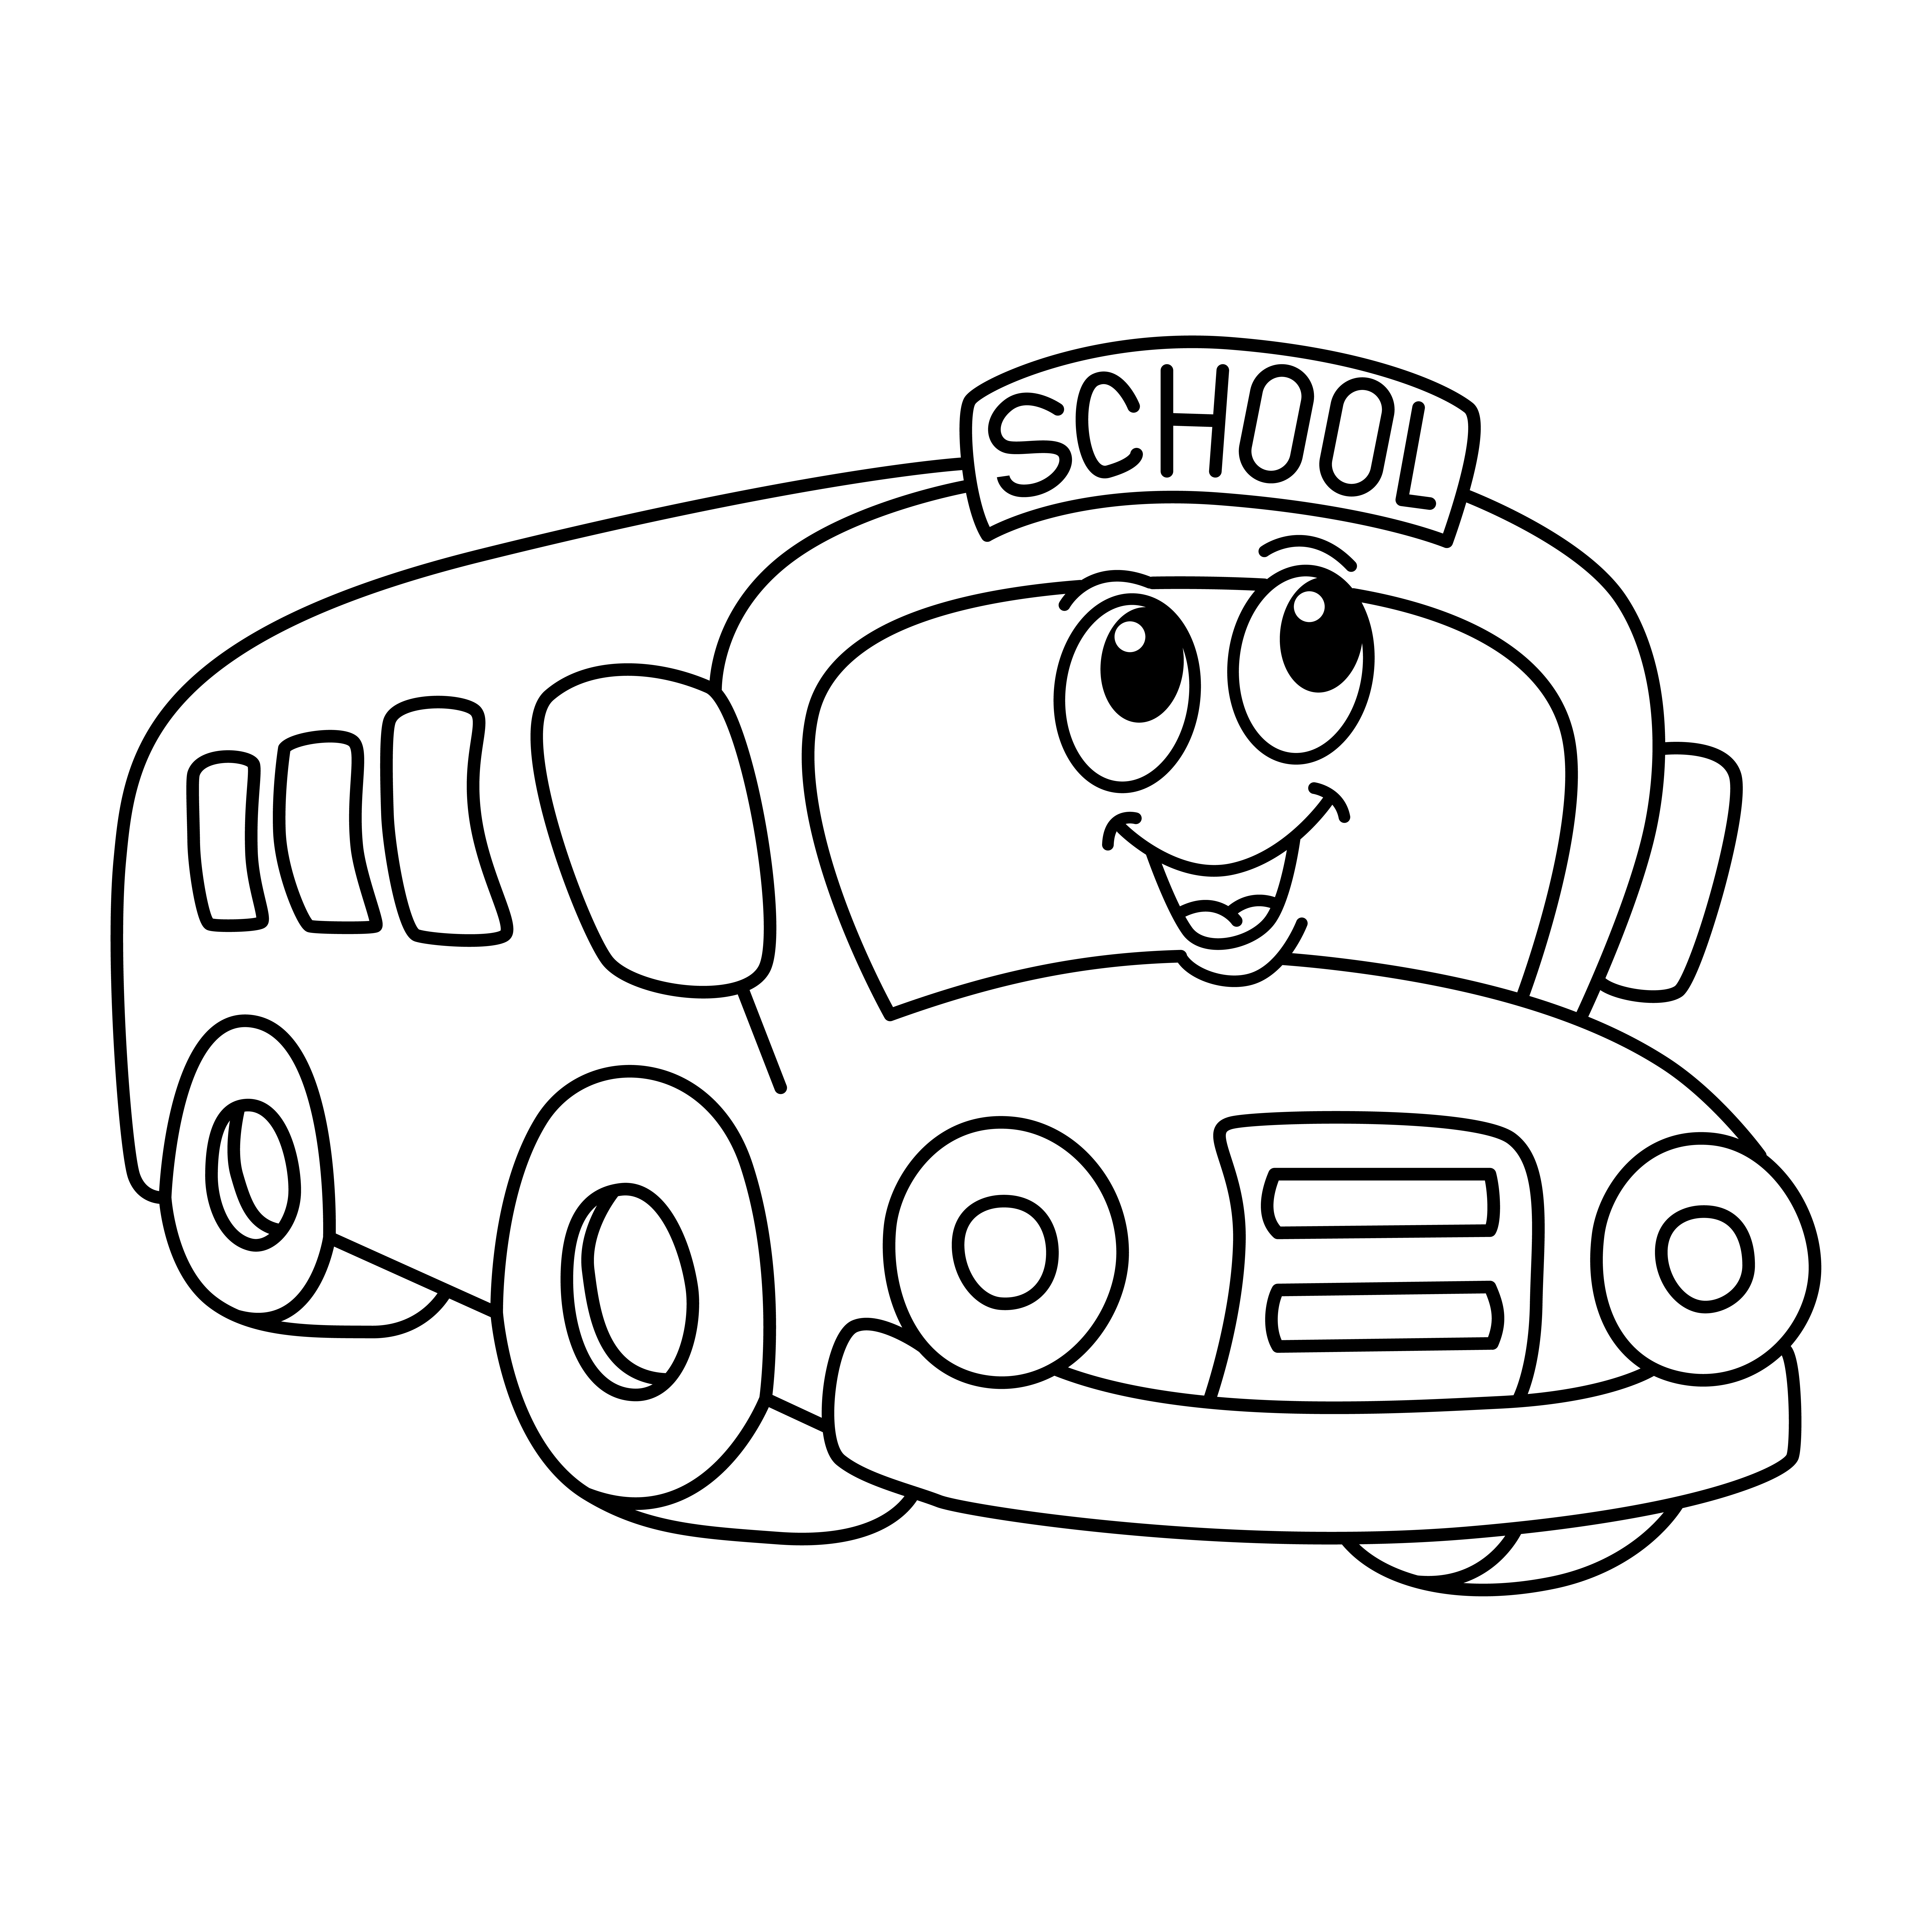 Раскраска мультяшный школьный автобус с лицом формата А4 в высоком качестве